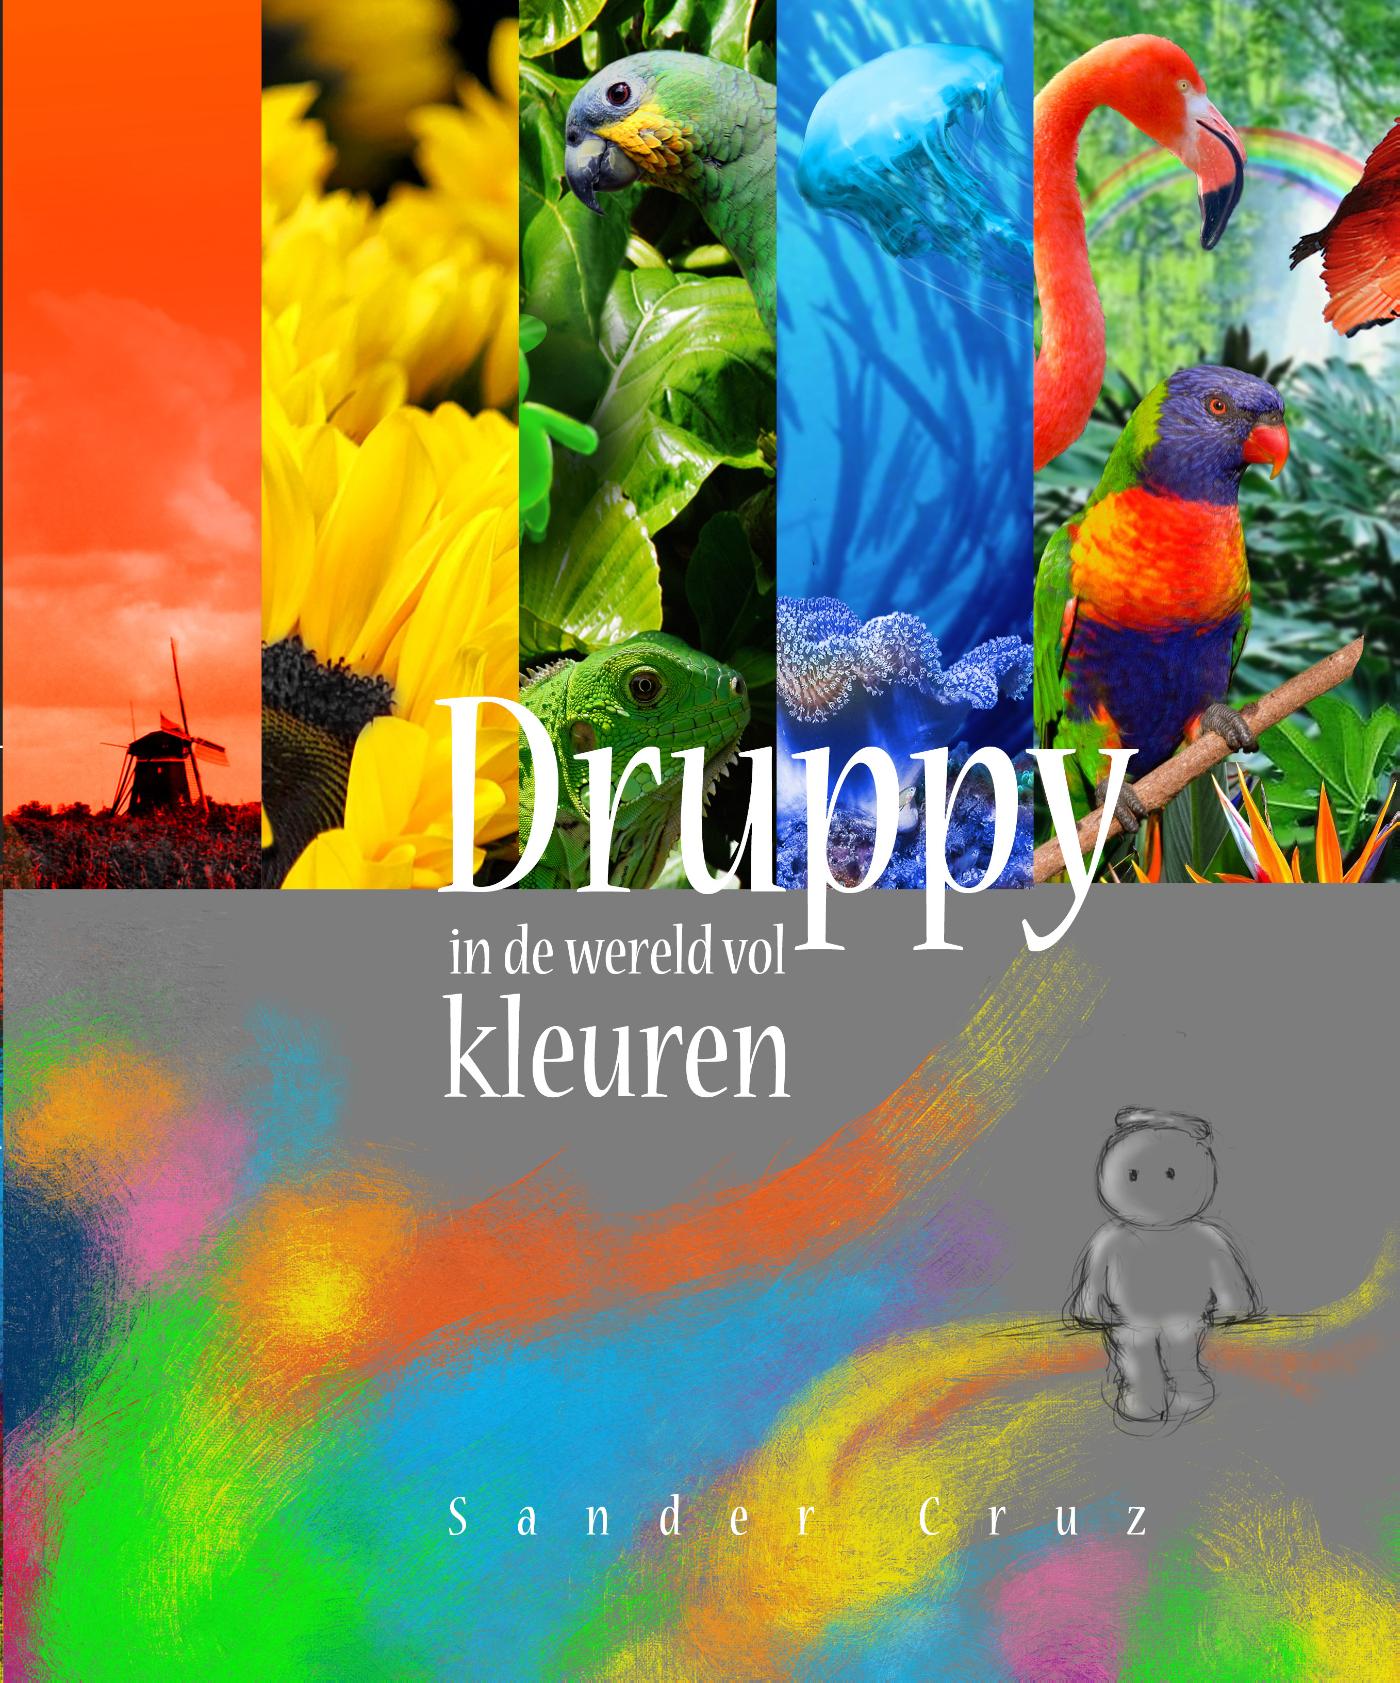 Druppy in de wereld vol kleuren (Ebook)